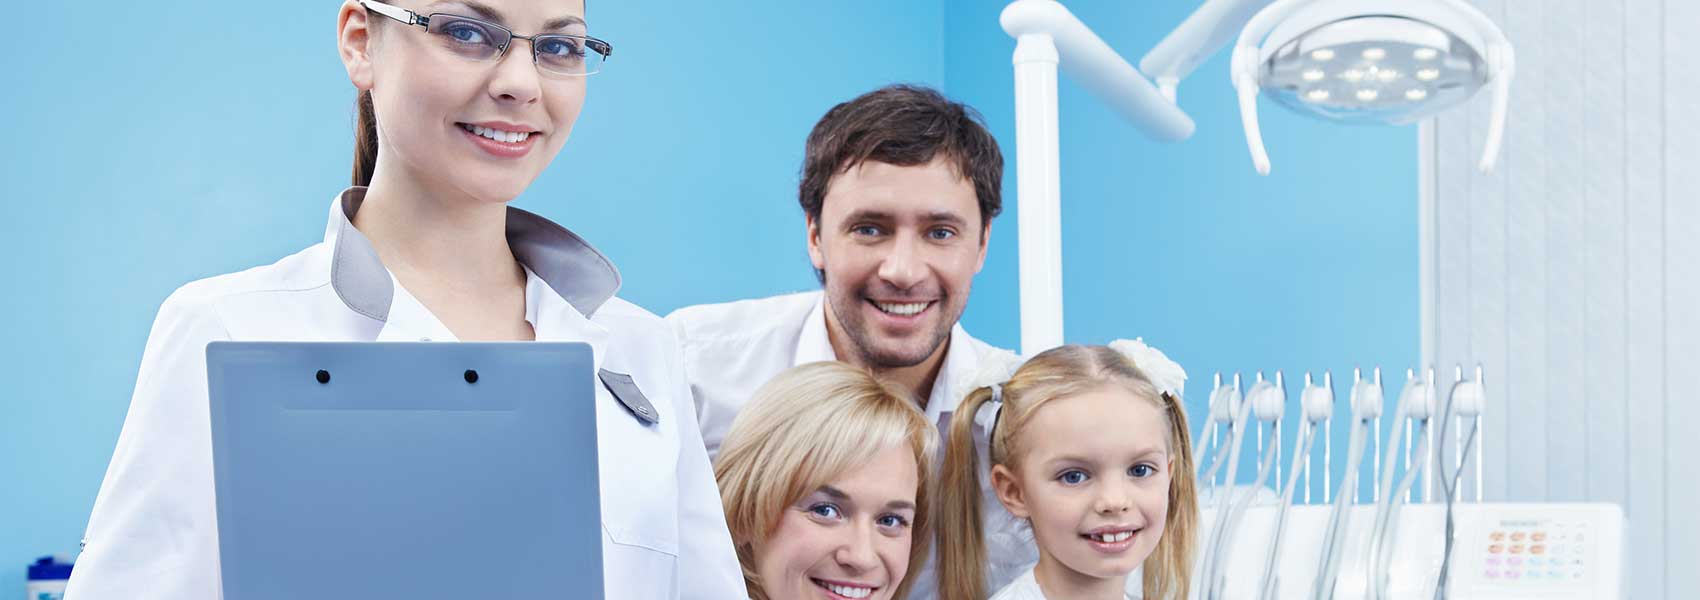 Happy family in dental